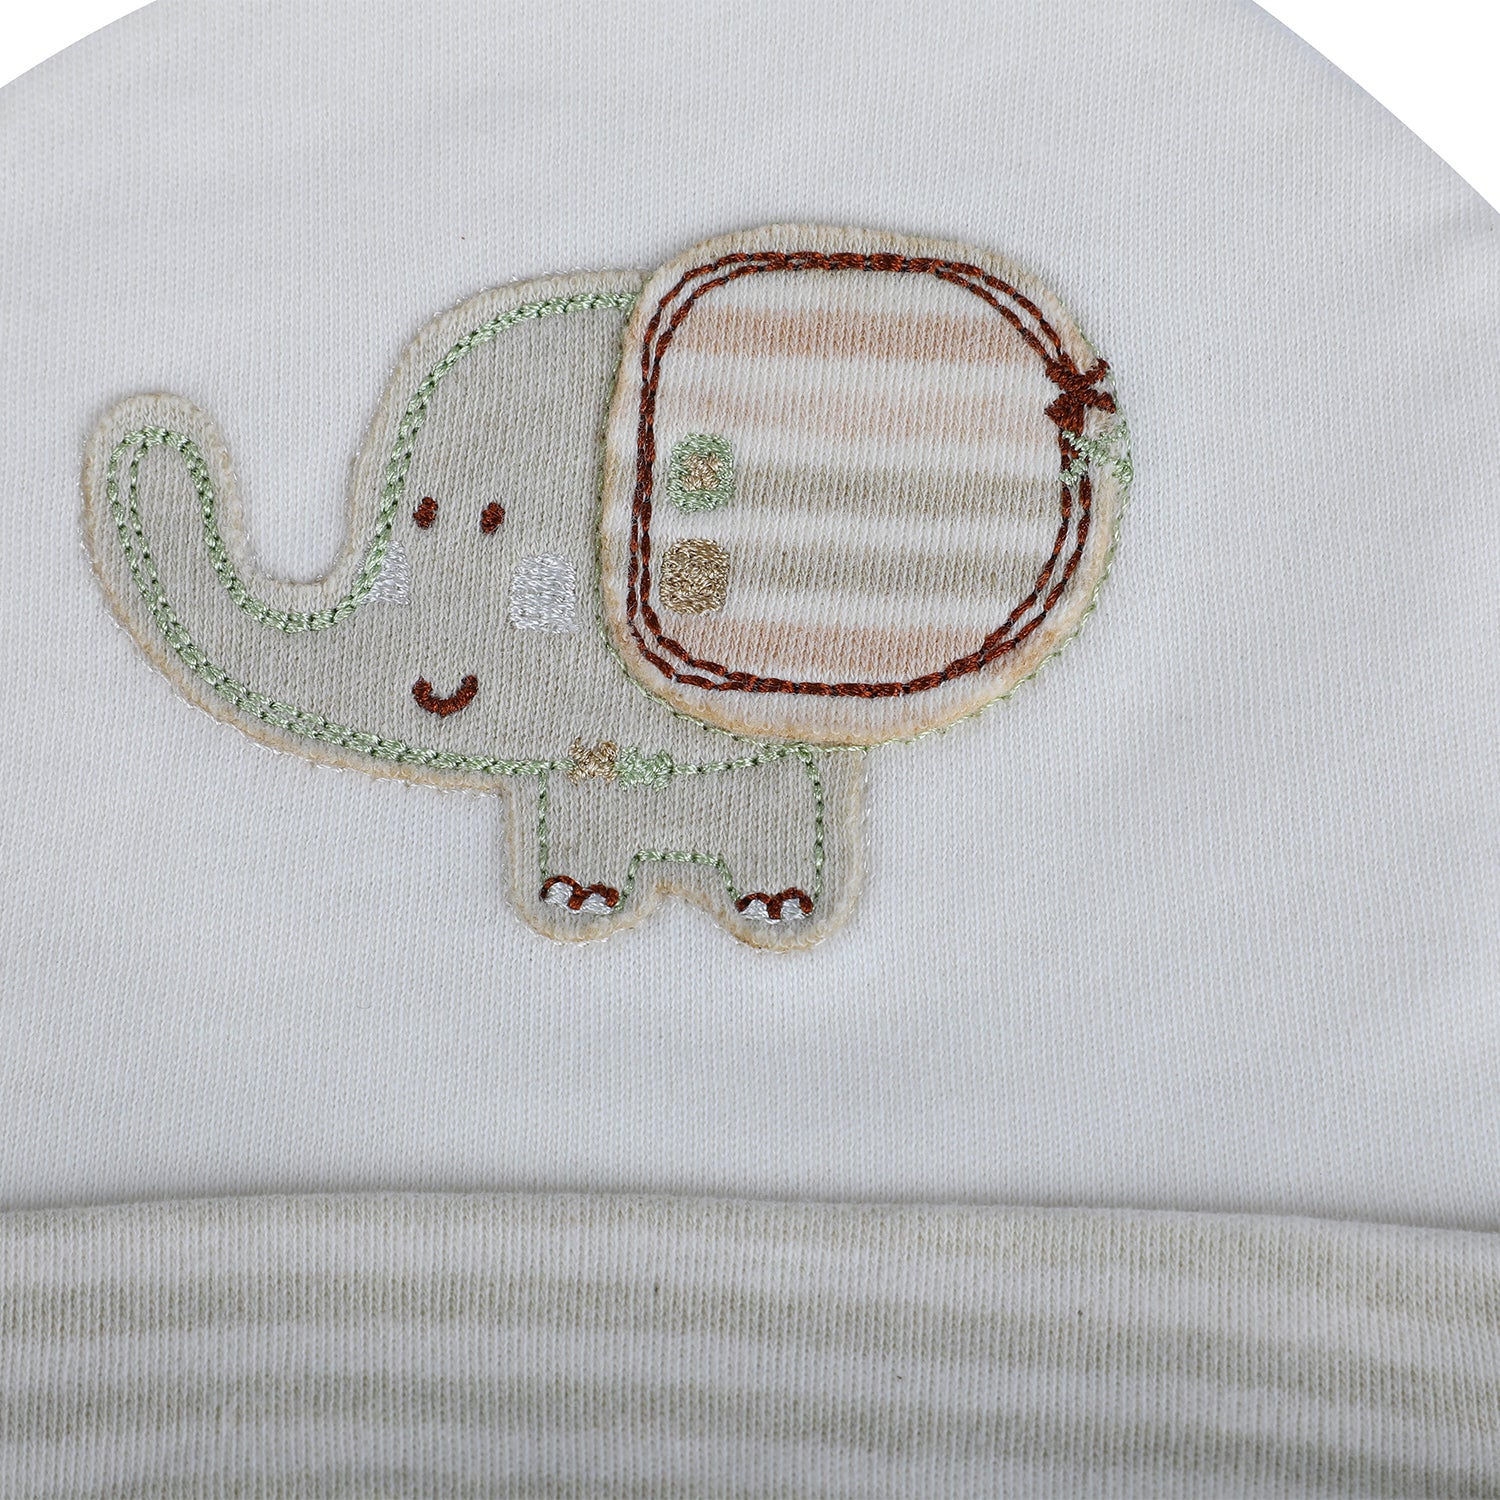 Baby Moo Zoo Animals Organic Soft Cotton Caps - White - Baby Moo